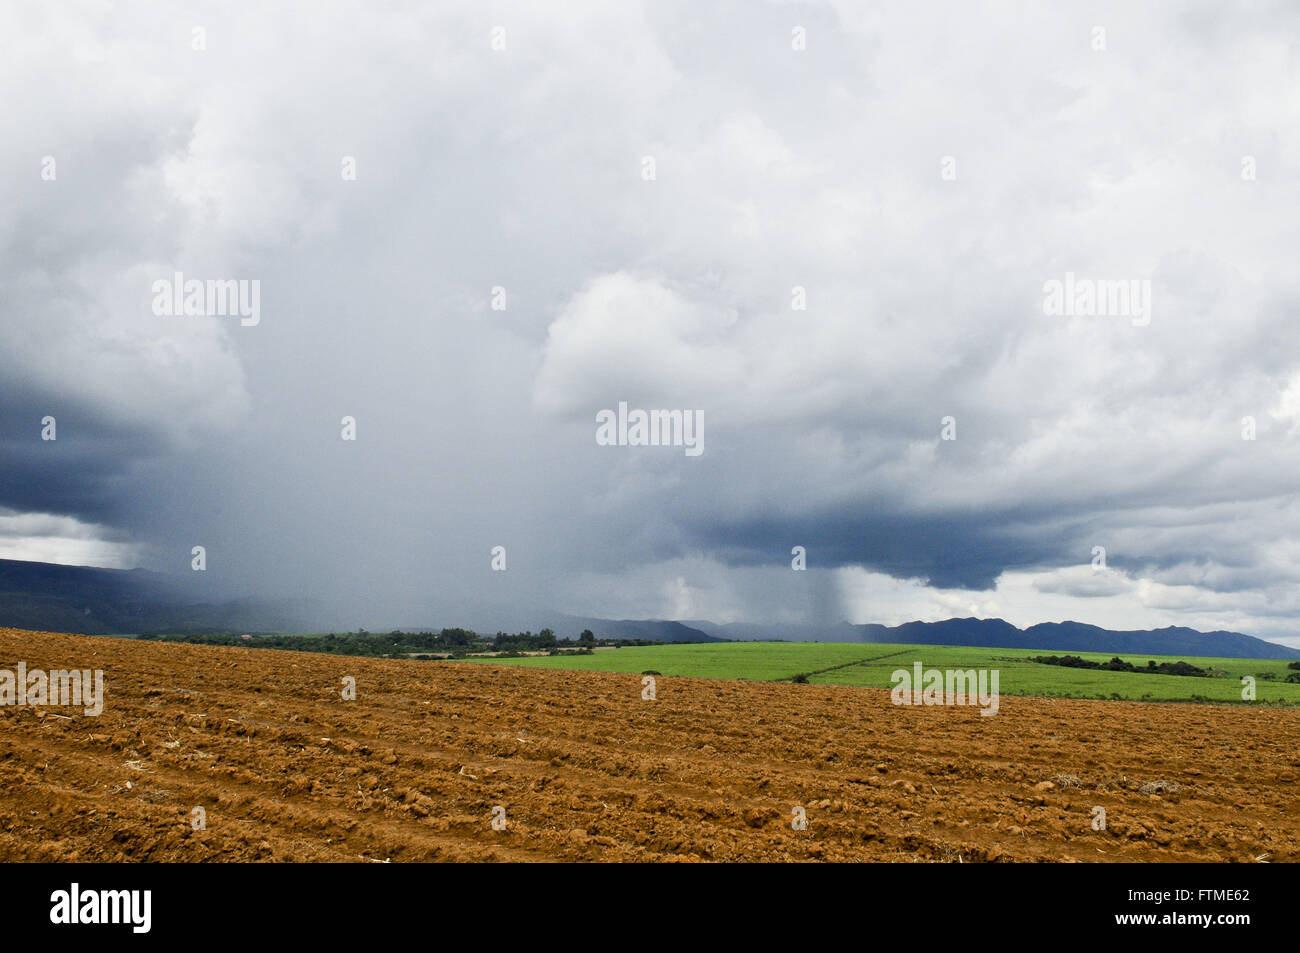 La pioggia della campagna con le piantagioni di canna da zucchero e della Serra da Canastra incidentali Foto Stock